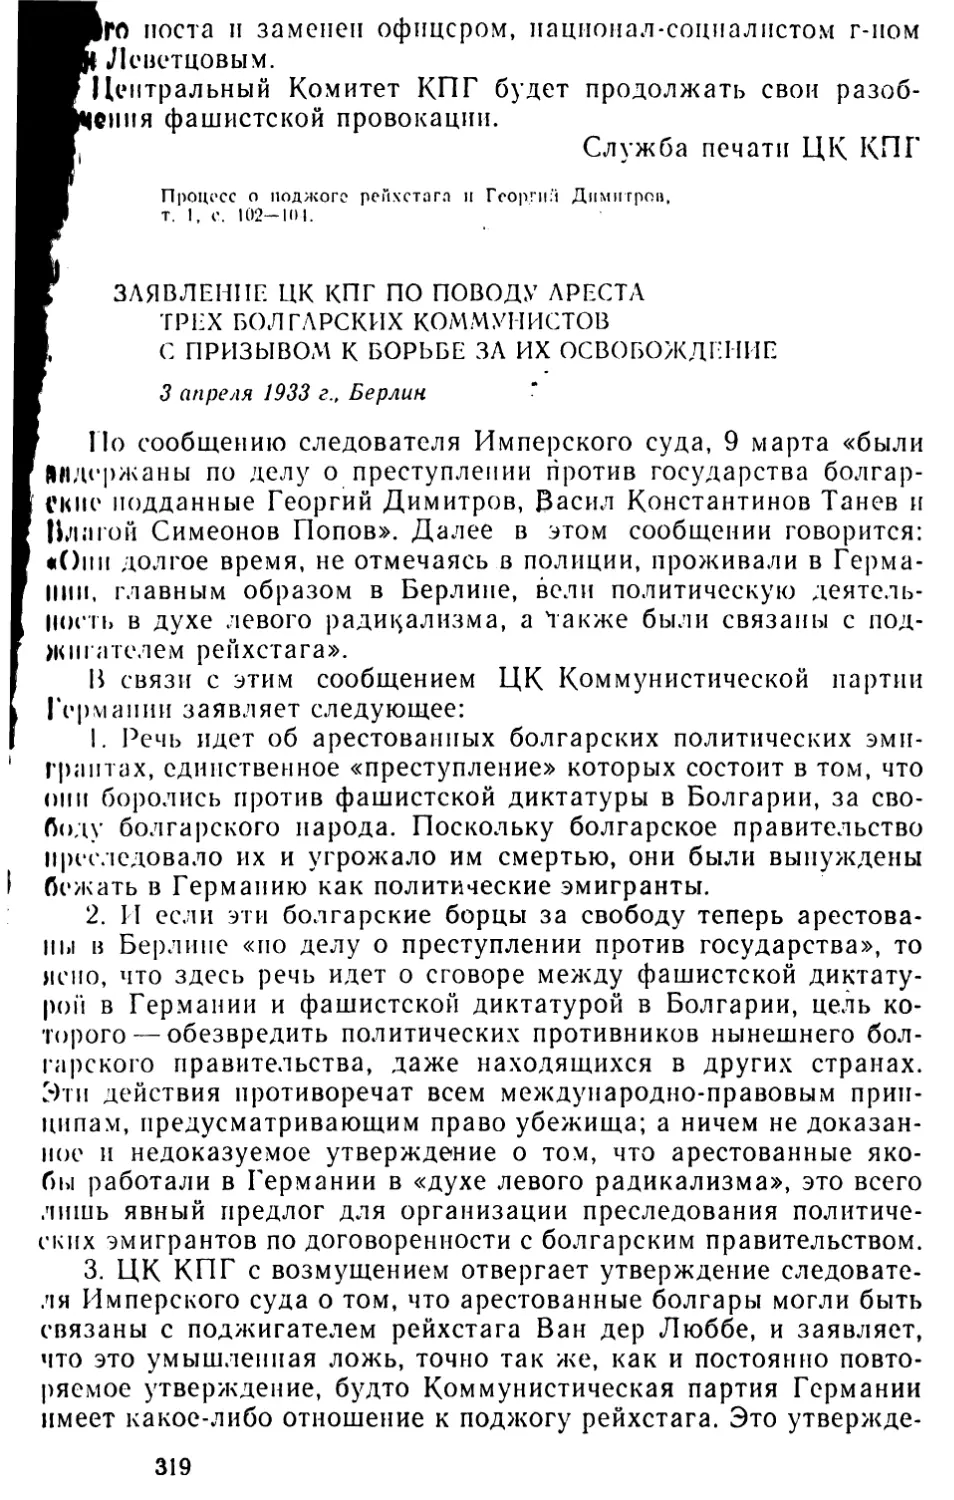 Заявление ЦК КПГ по поводу ареста трех болгарских коммунистов с призывом к борьбе за их освобождение. 3 апреля 1933 г